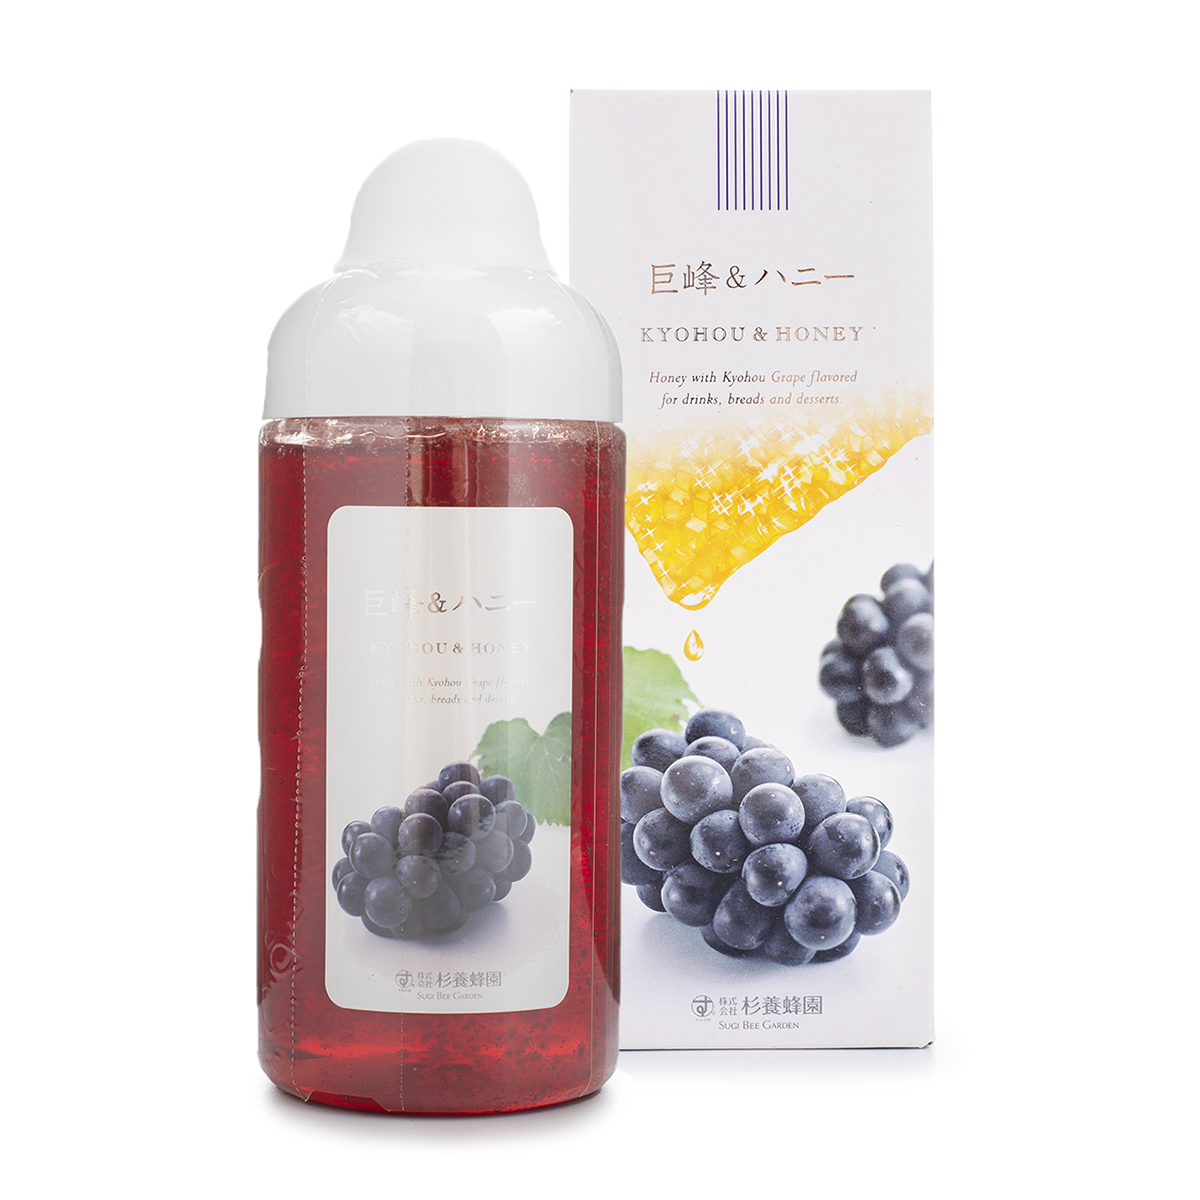 日本杉養蜂園果汁蜂蜜葡萄味500g 